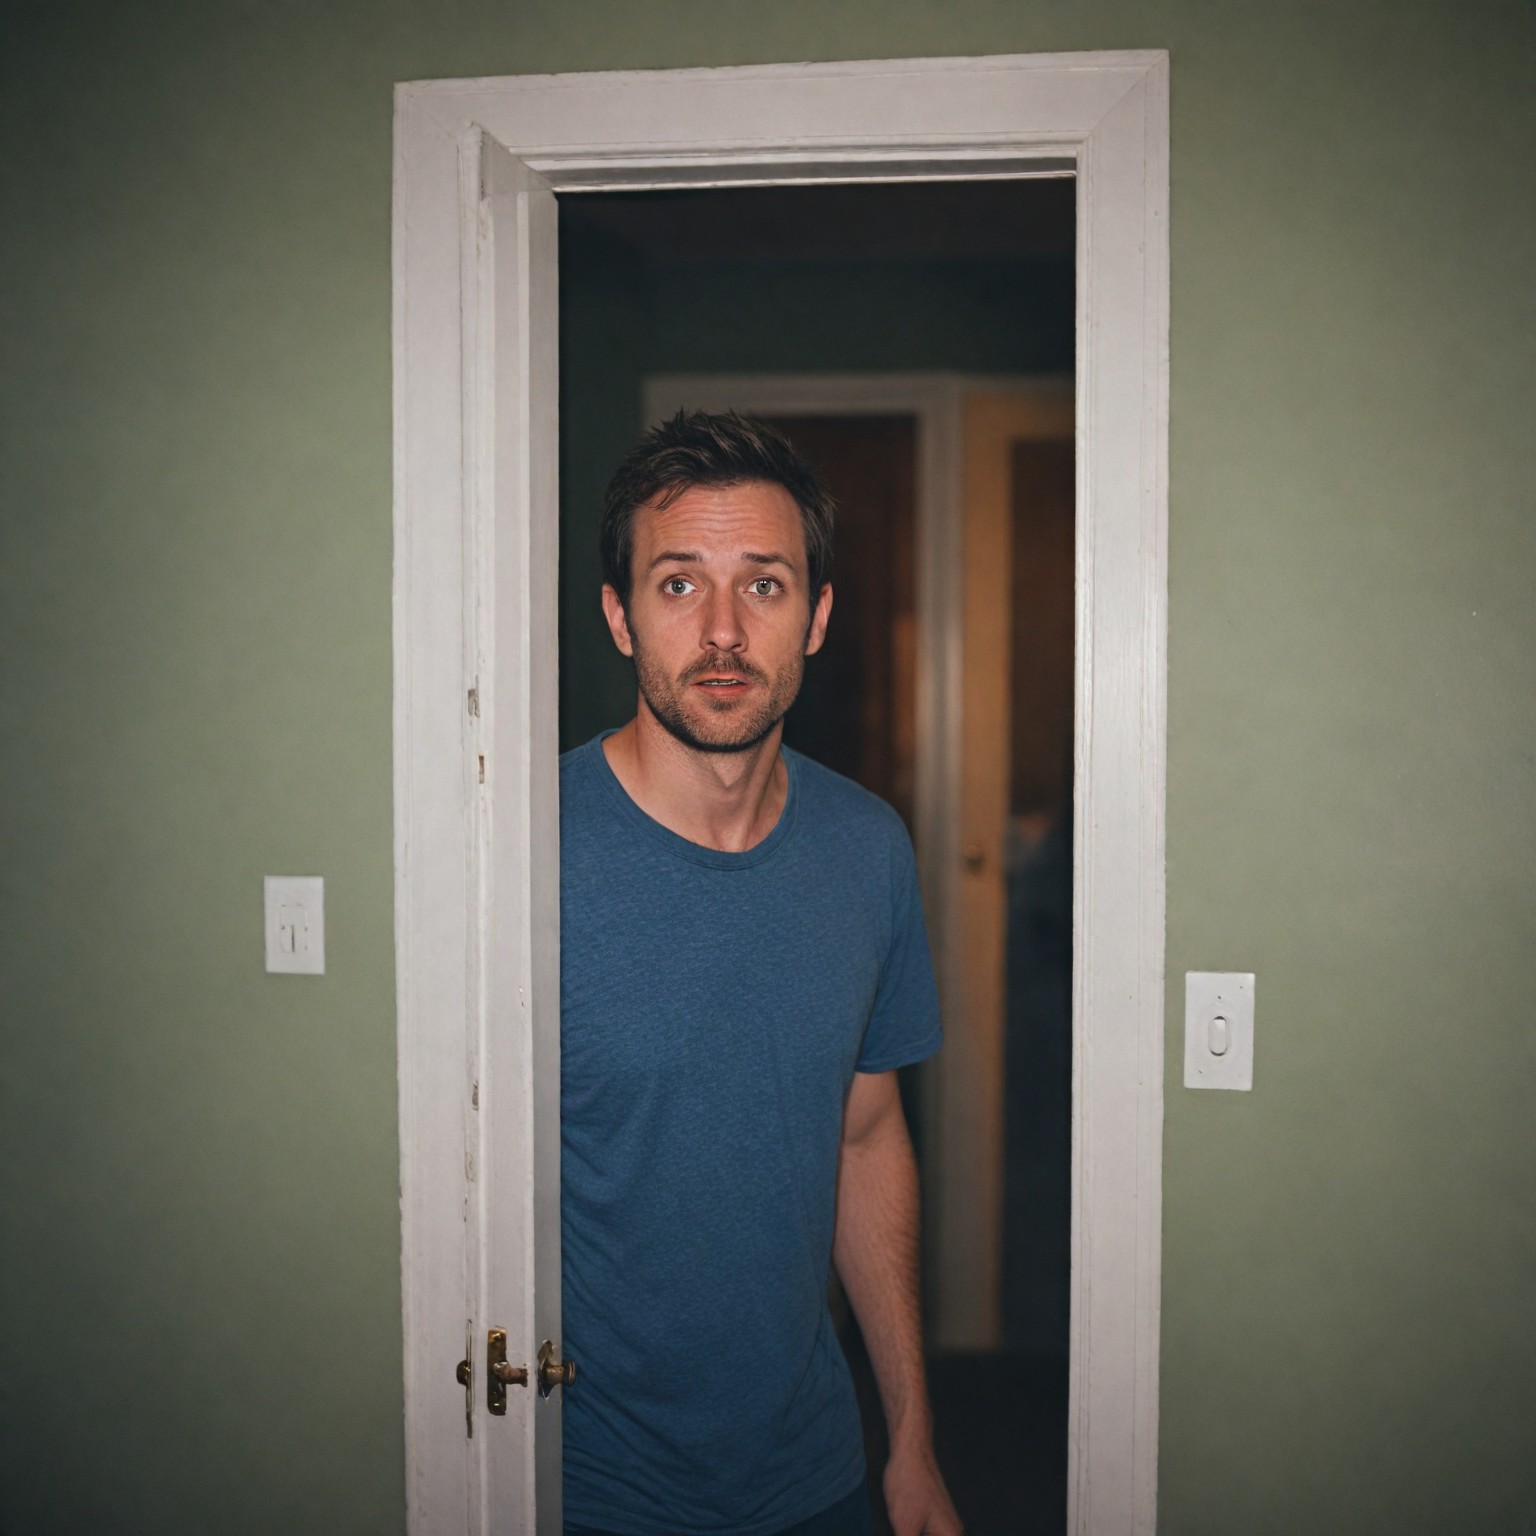 John de pie en la puerta del dormitorio, con cara de asombro e incredulidad | Fuente: Midjourney